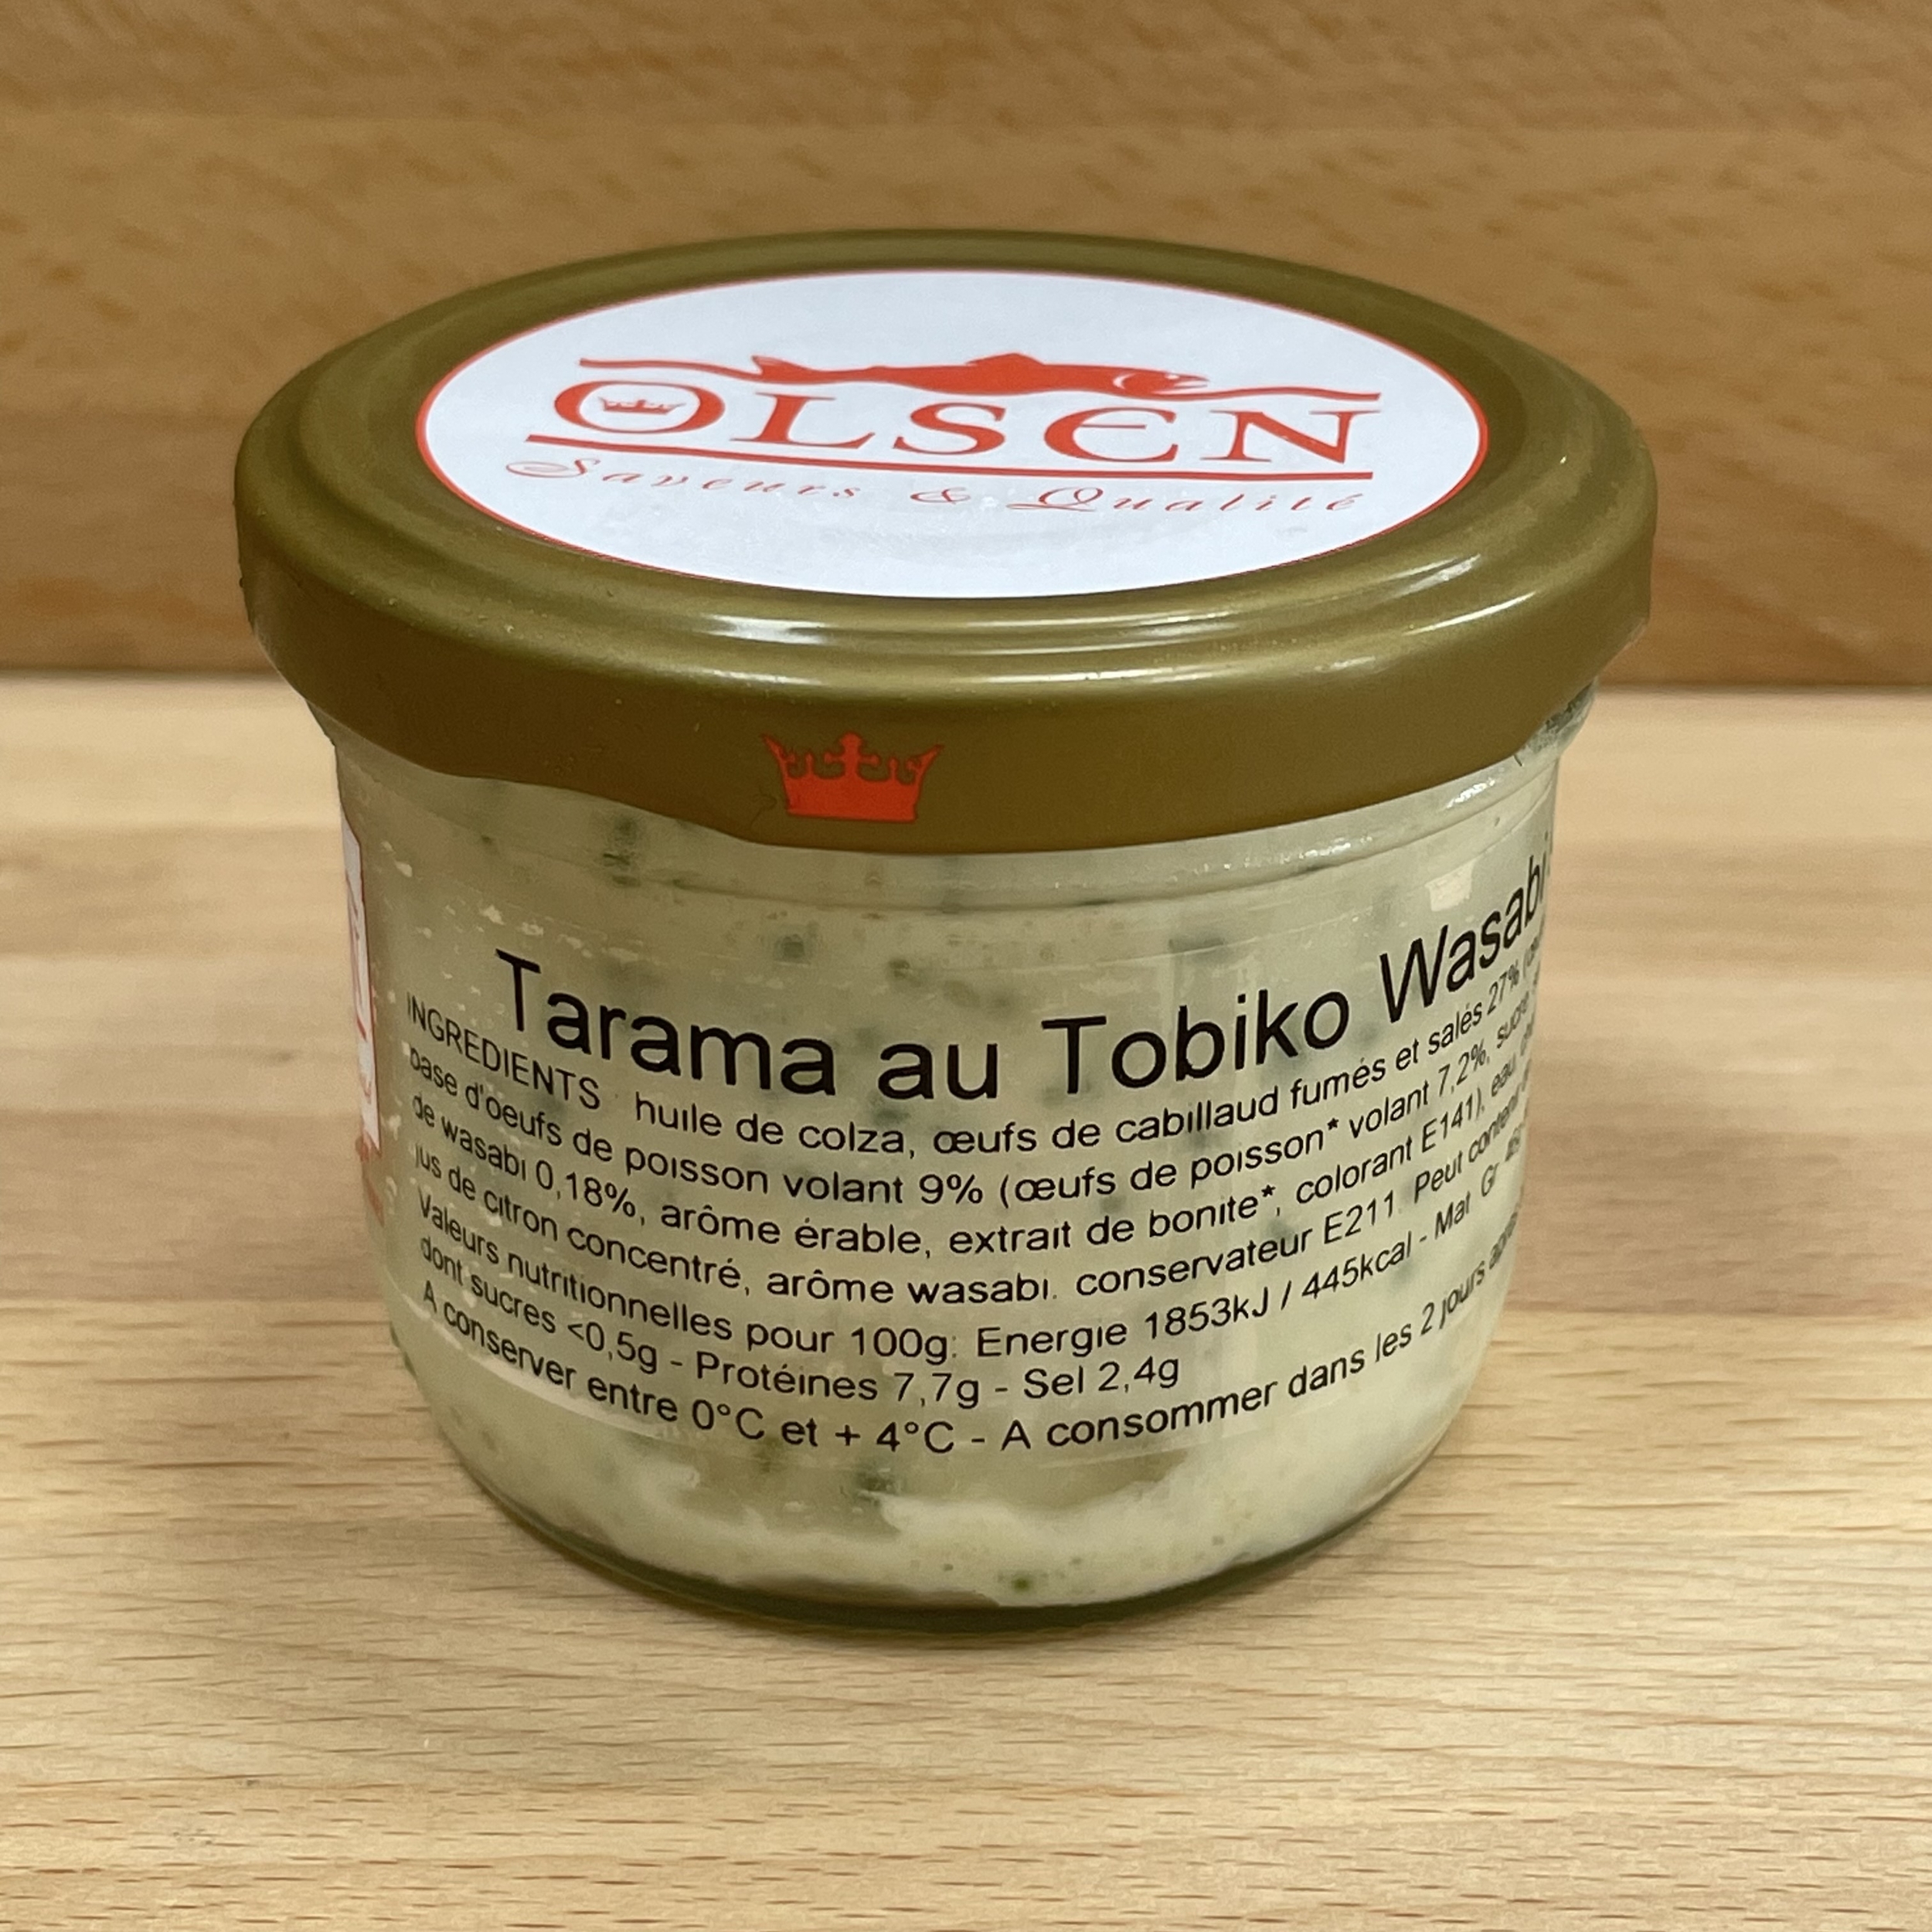 Tarama au tobiko wasabi 90g-OLB35B-olsen-www.luxfood-shop.fr